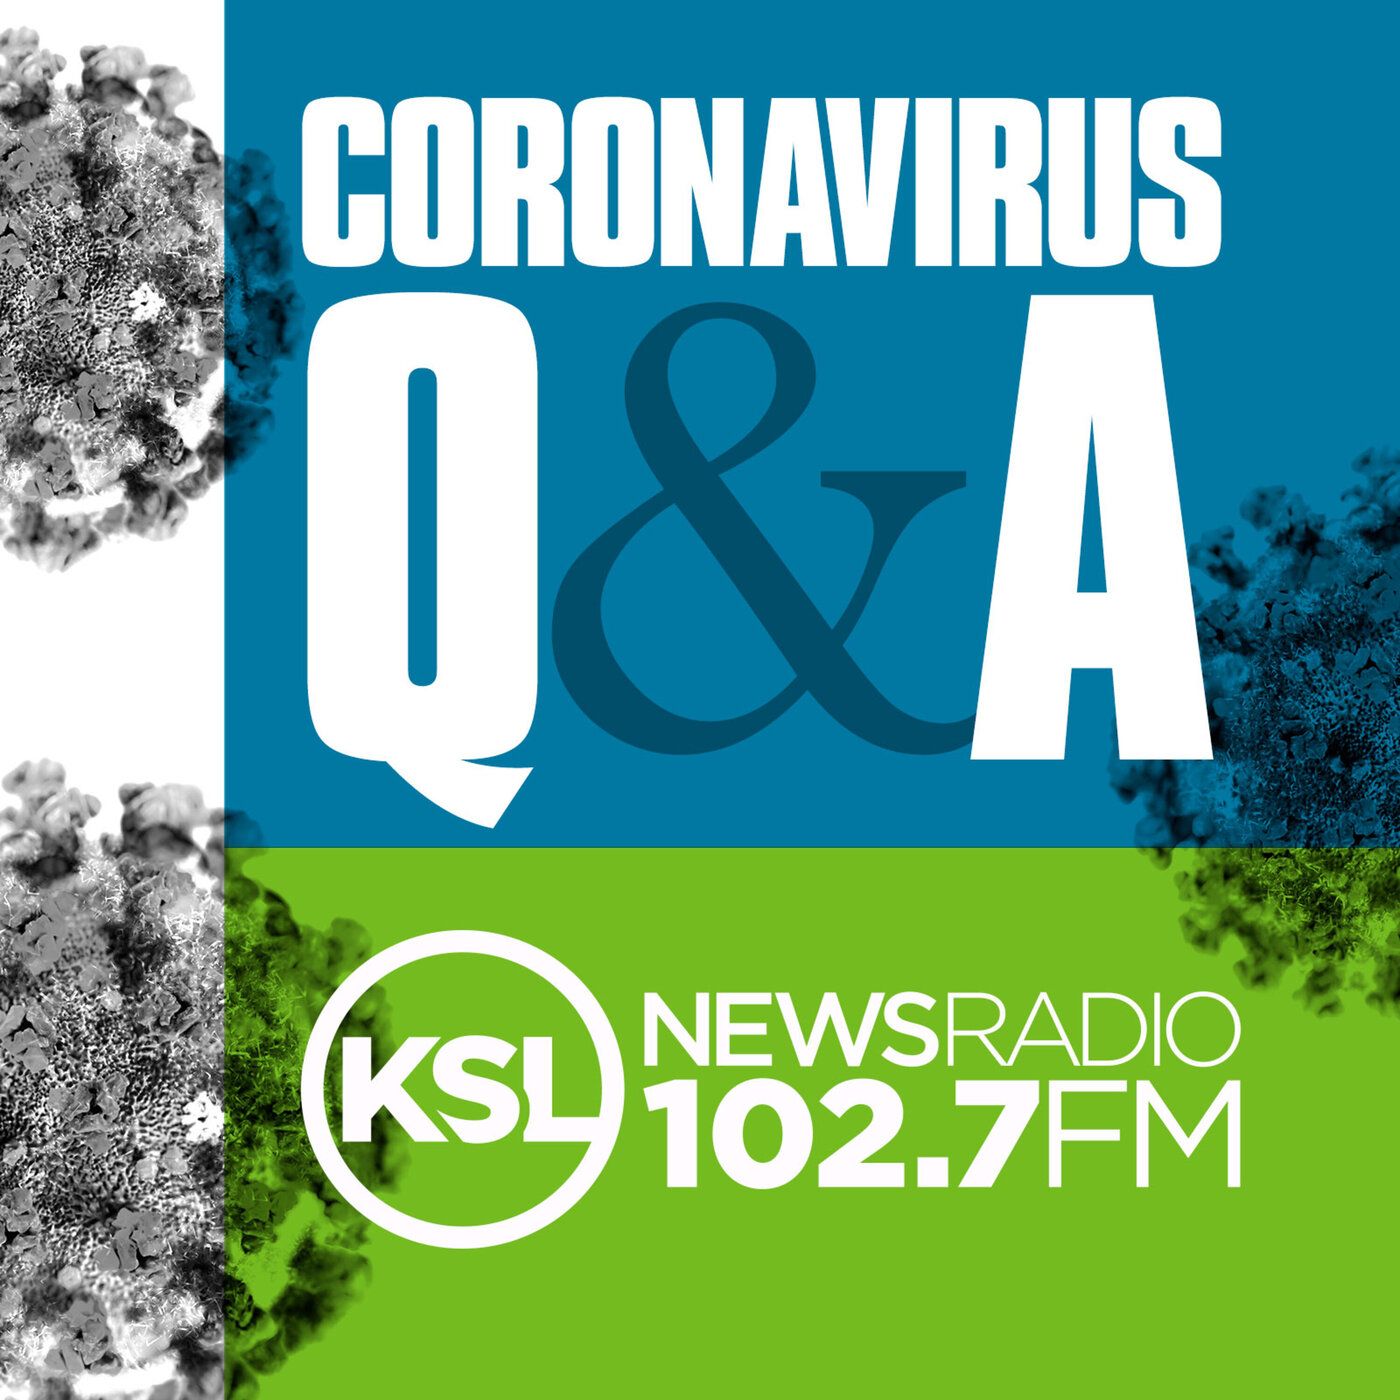 Coronavirus Update November 22